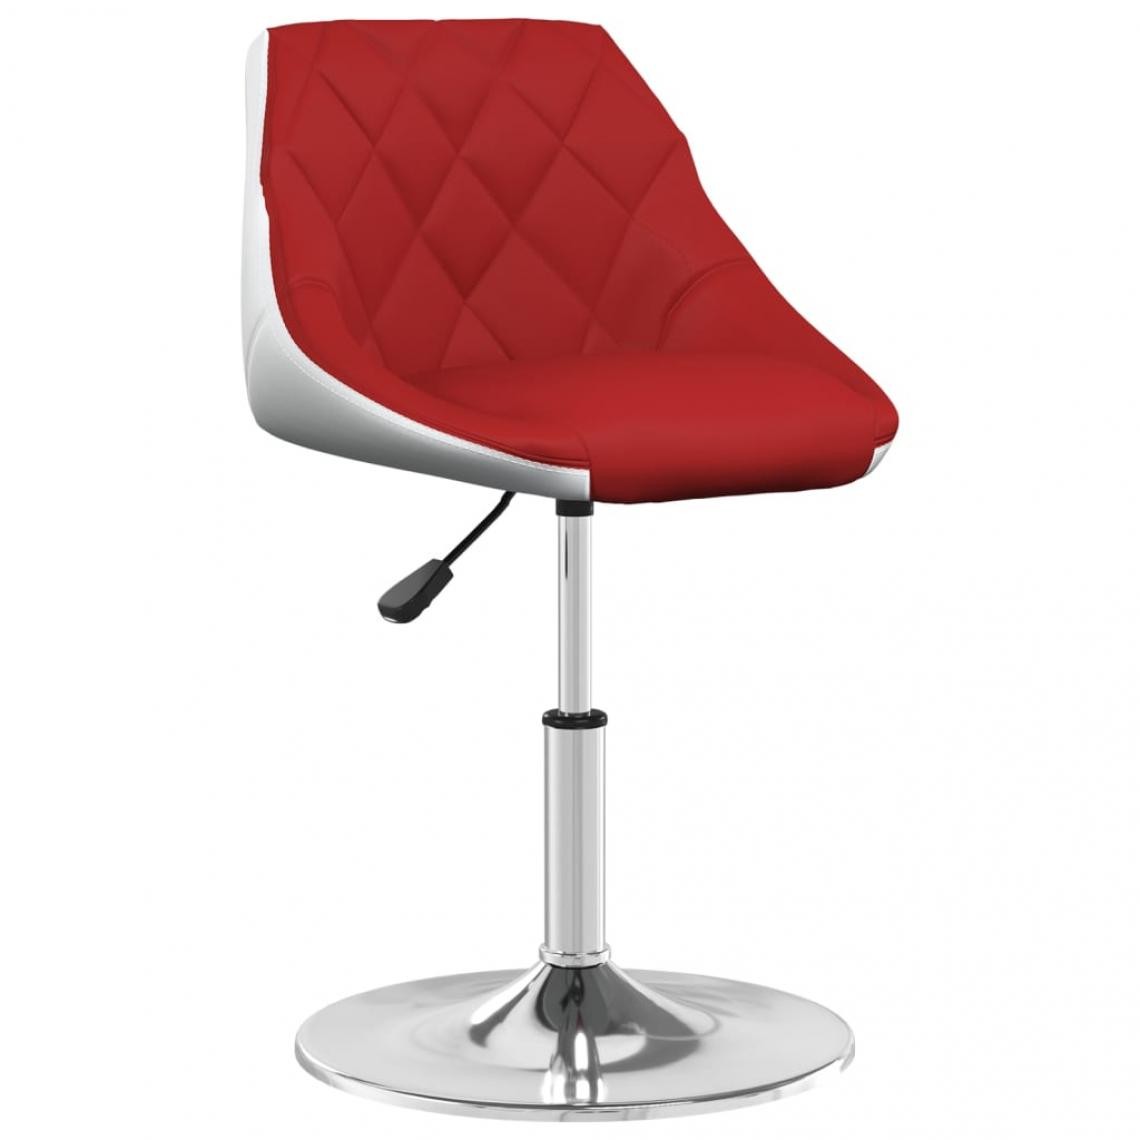 Vidaxl - vidaXL Chaise de salle à manger Rouge bordeaux et blanc Similicuir - Chaises